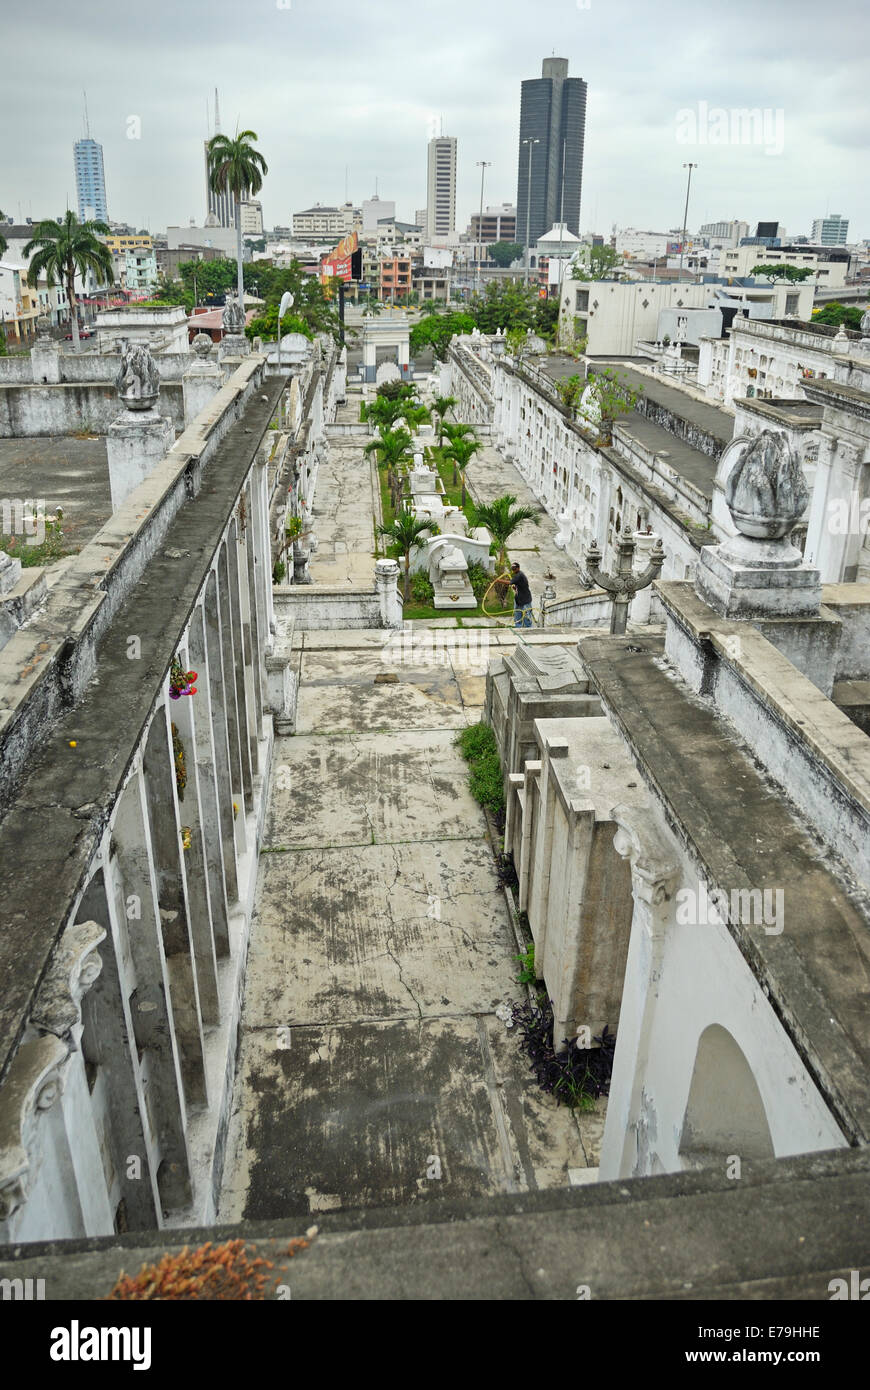 Cementerio de La Ciudad Blanca, el cementerio de la ciudad de Guayaquil ...